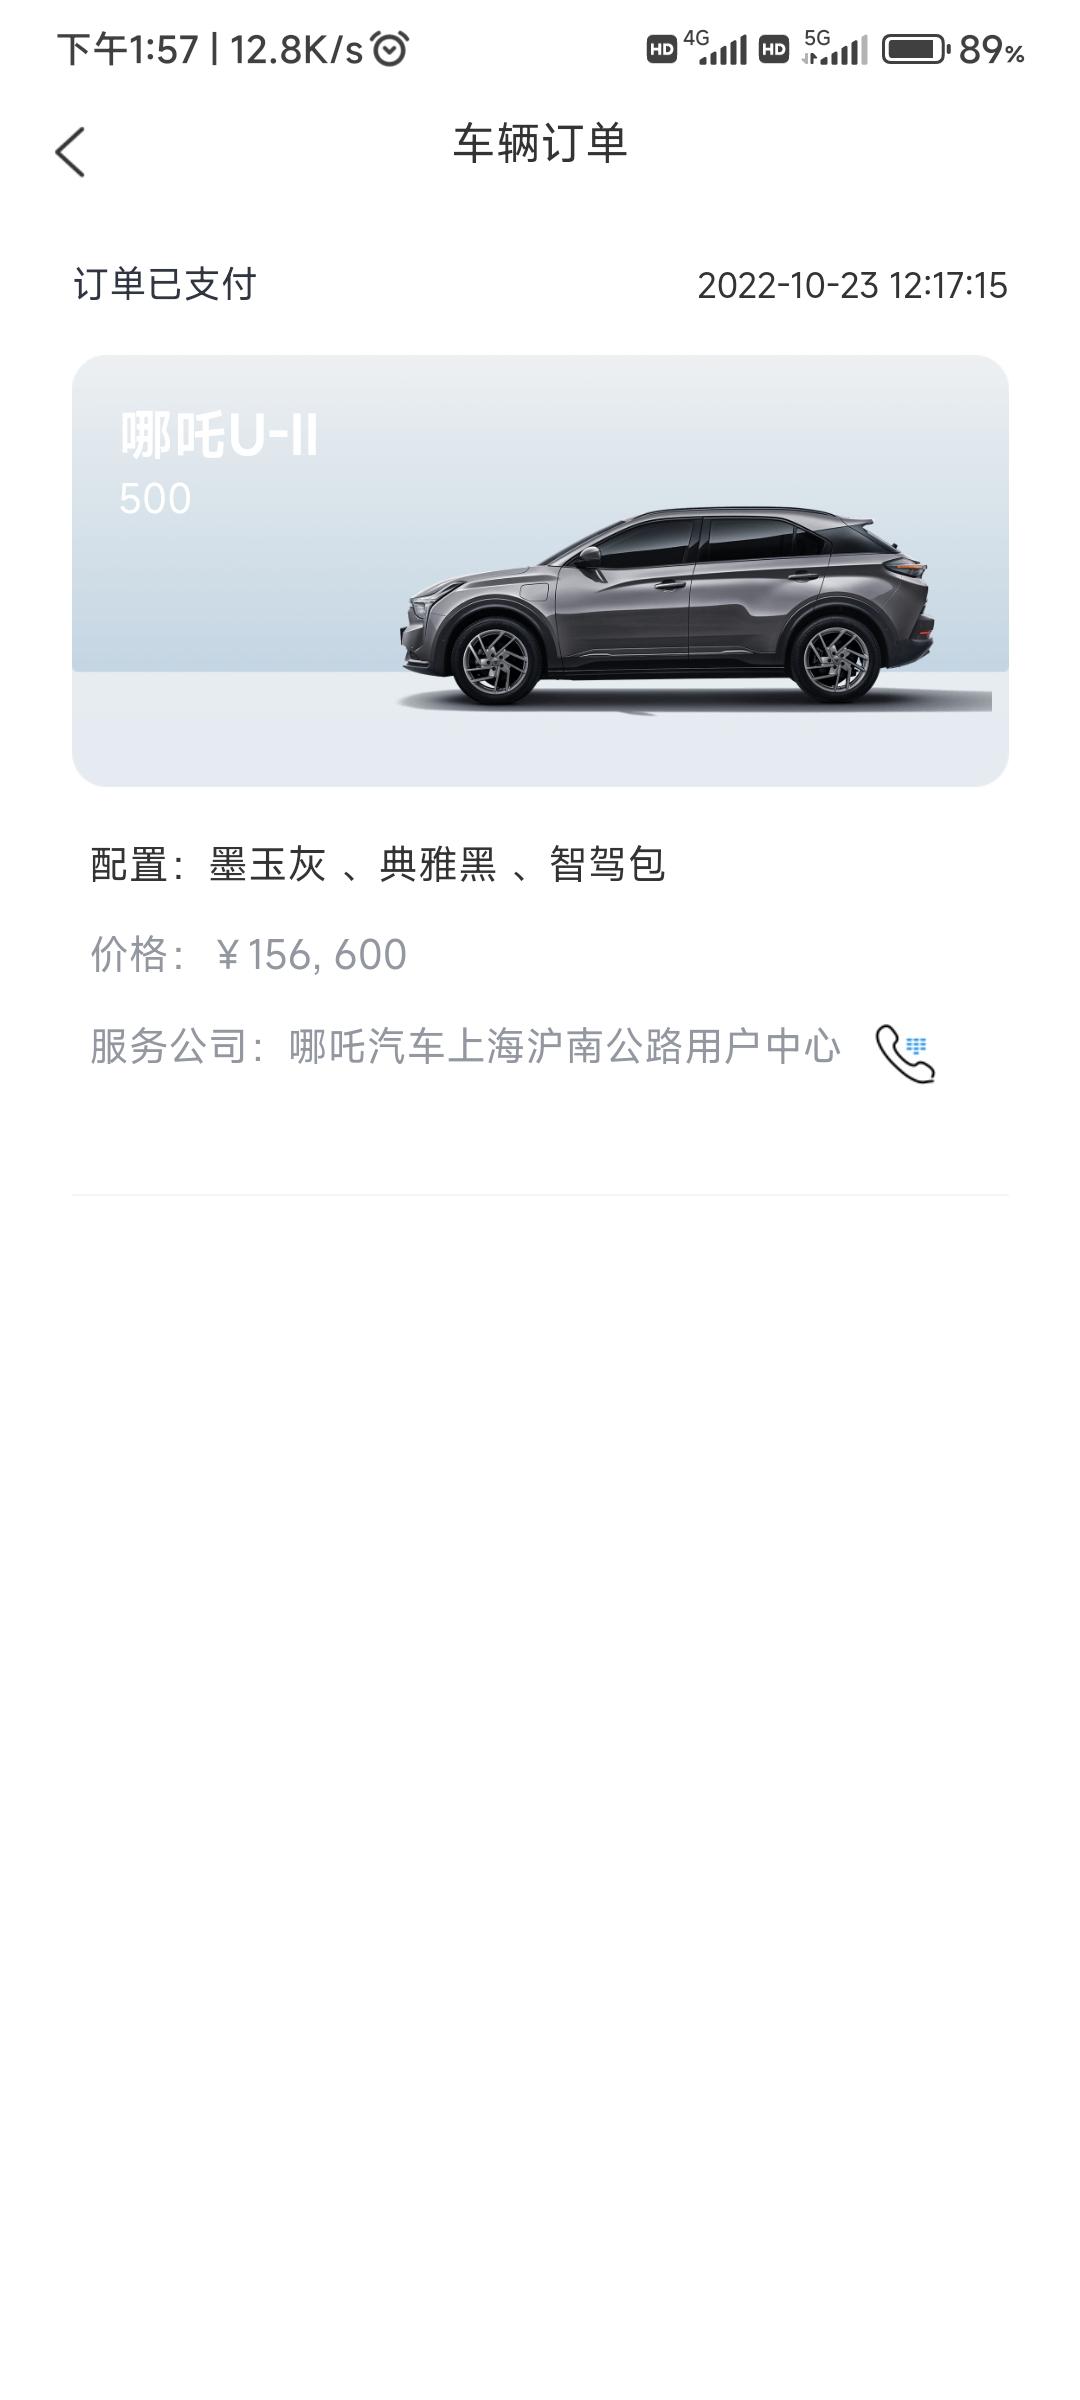 哪吒哪吒U 上海提车一般需要多久?十月底订单。销售说年前能提车